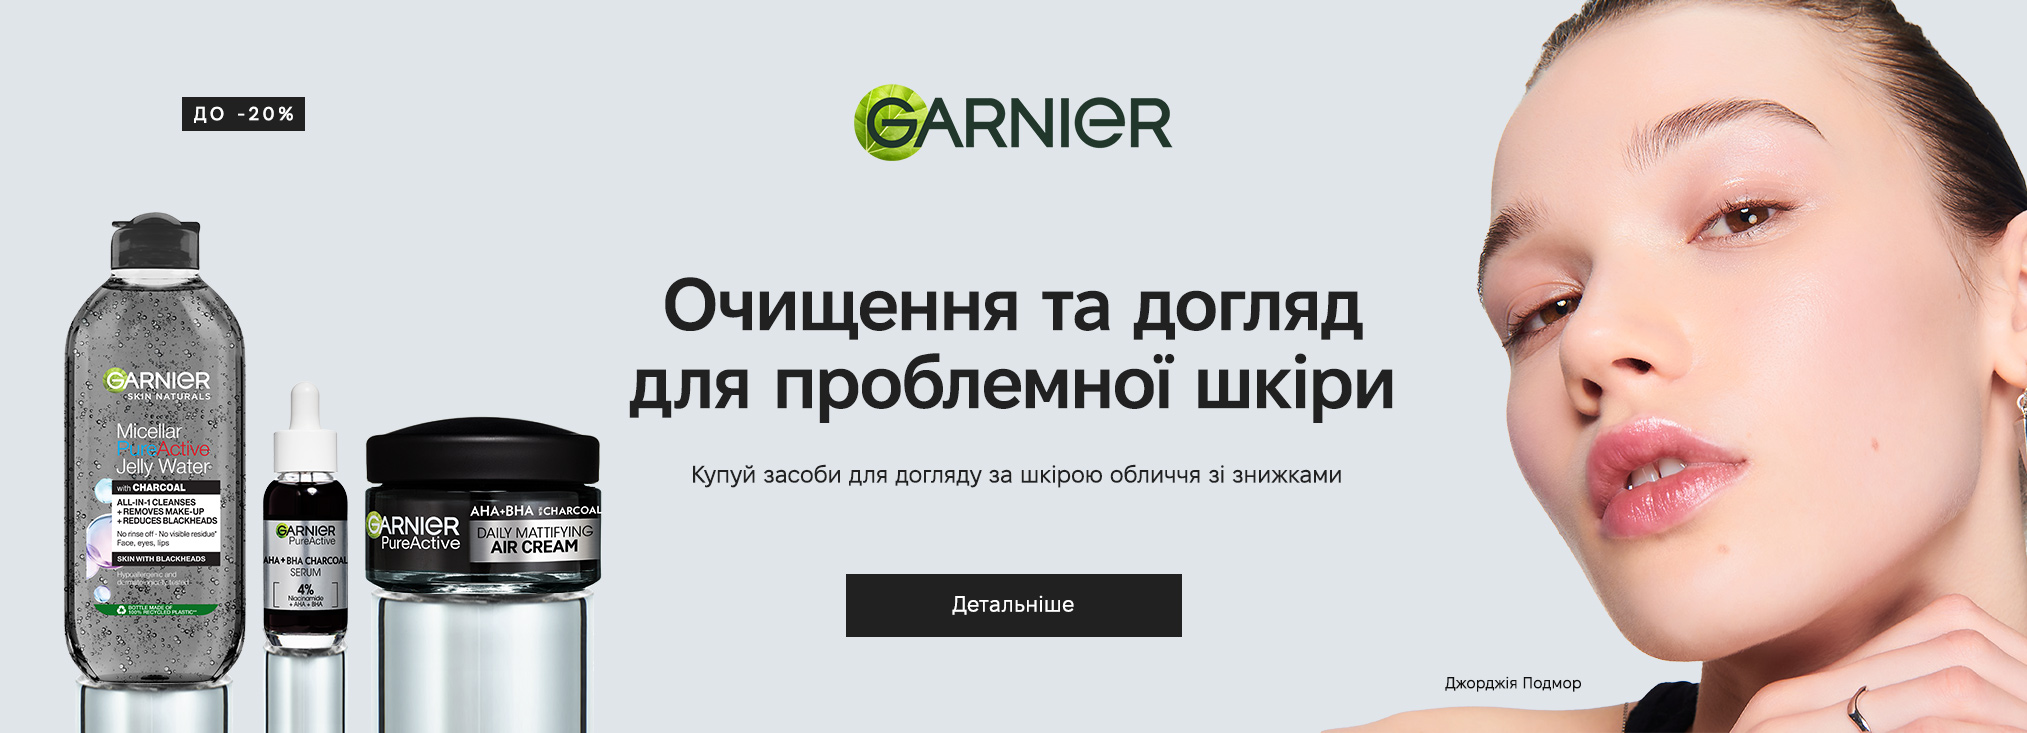 Garnier_20273